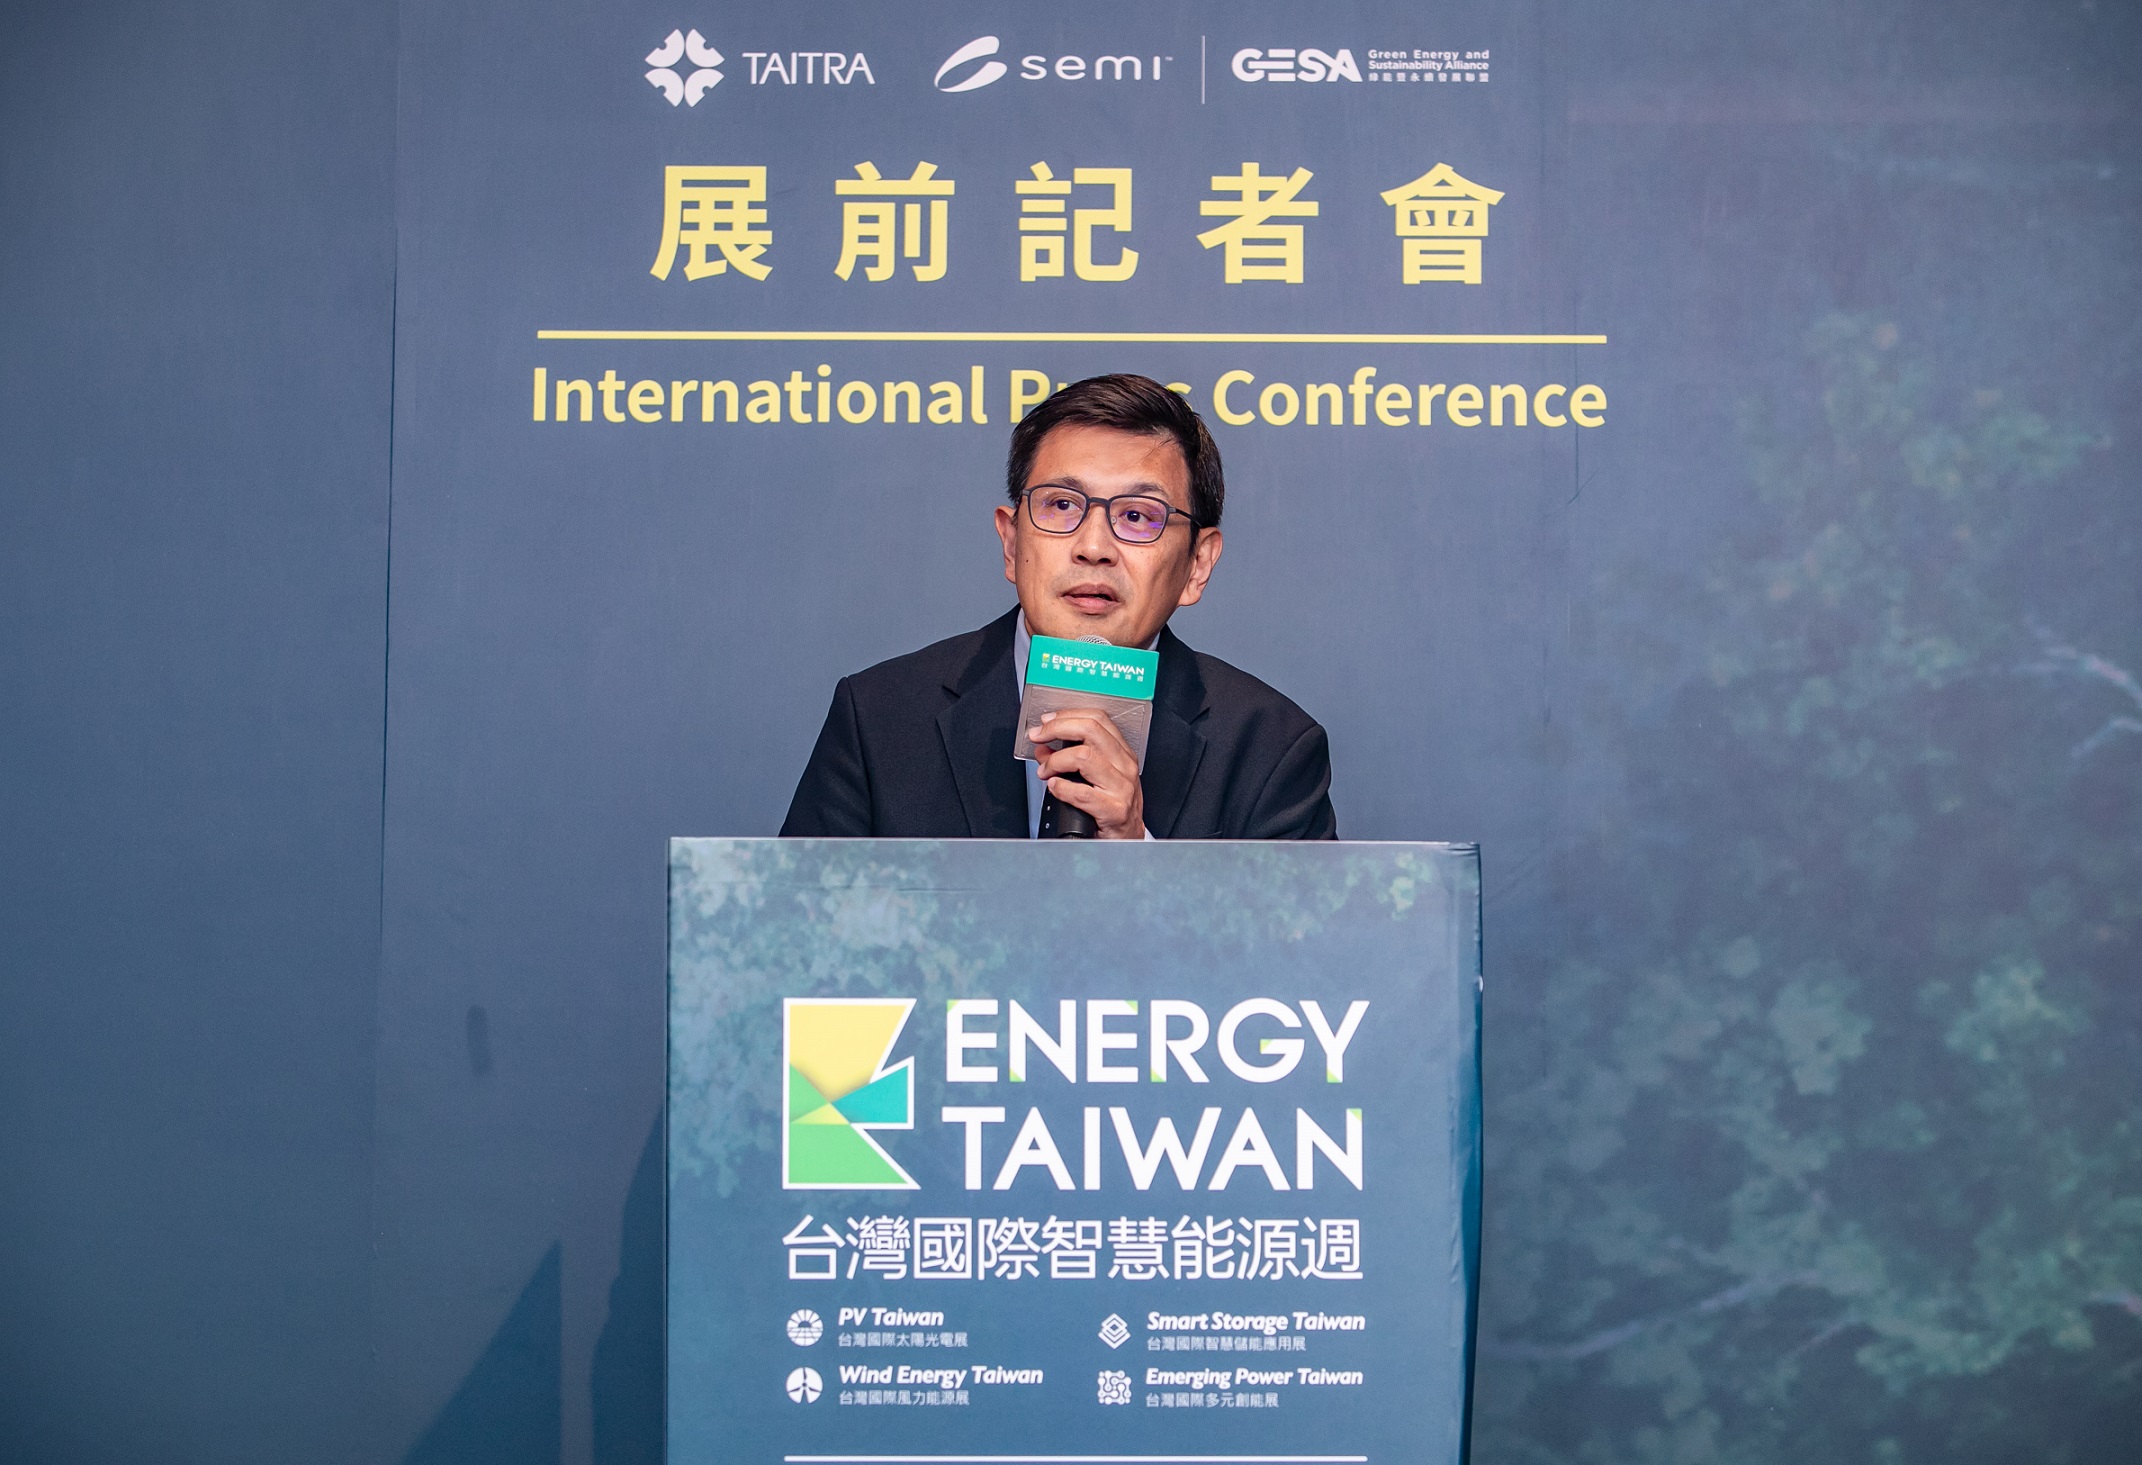 台灣國際智慧能源週